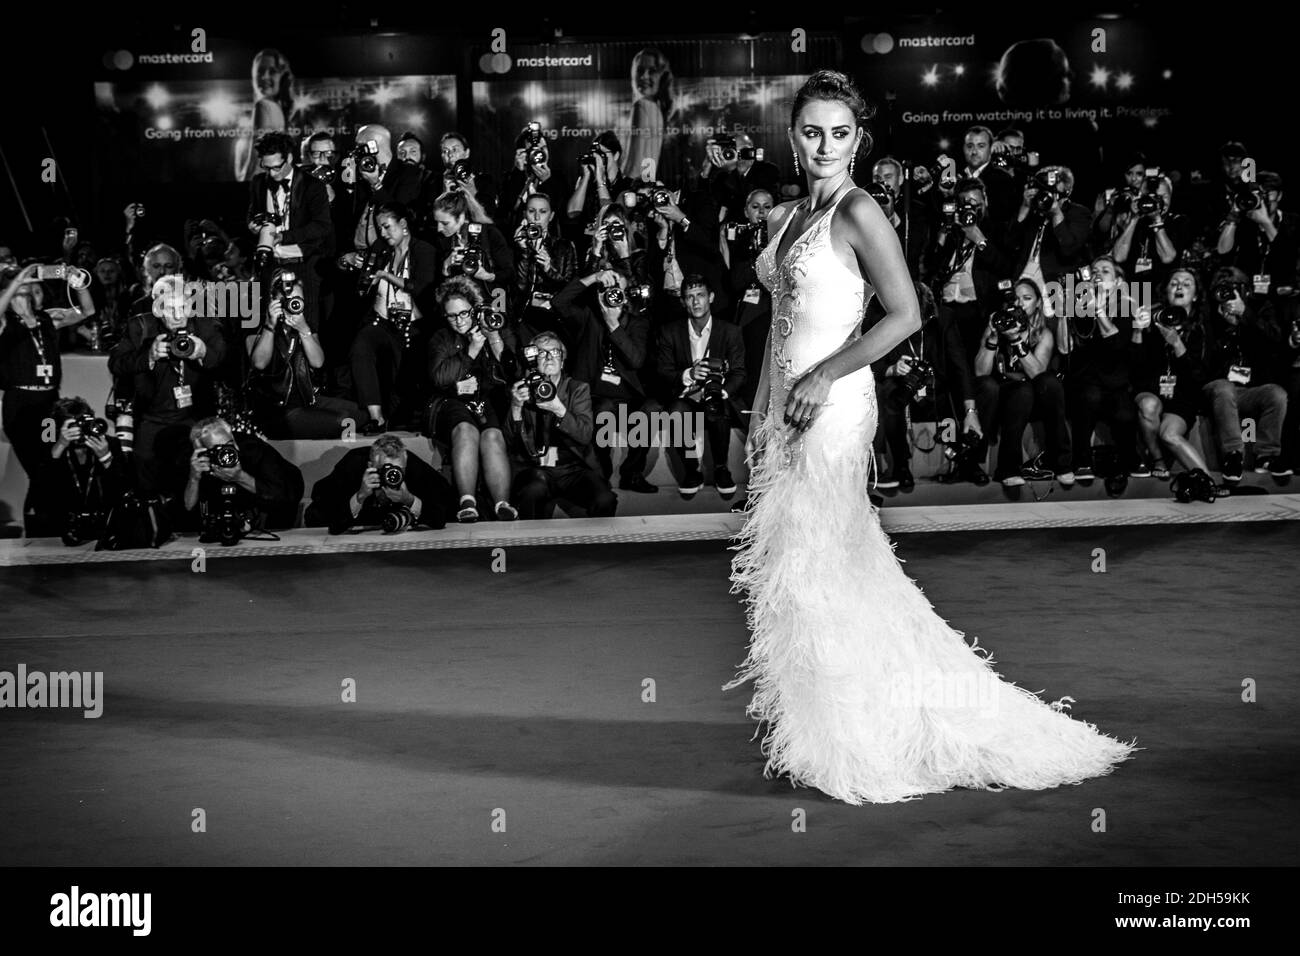 Penelope Cruz kommt zur Premiere von Loving Pablo im Rahmen des 74. Internationalen Filmfestivals (Mostra) in Venedig, Italien, am 6. September 2017. Foto von Marco Piovanotto/ABACAPRESS.COM Stockfoto